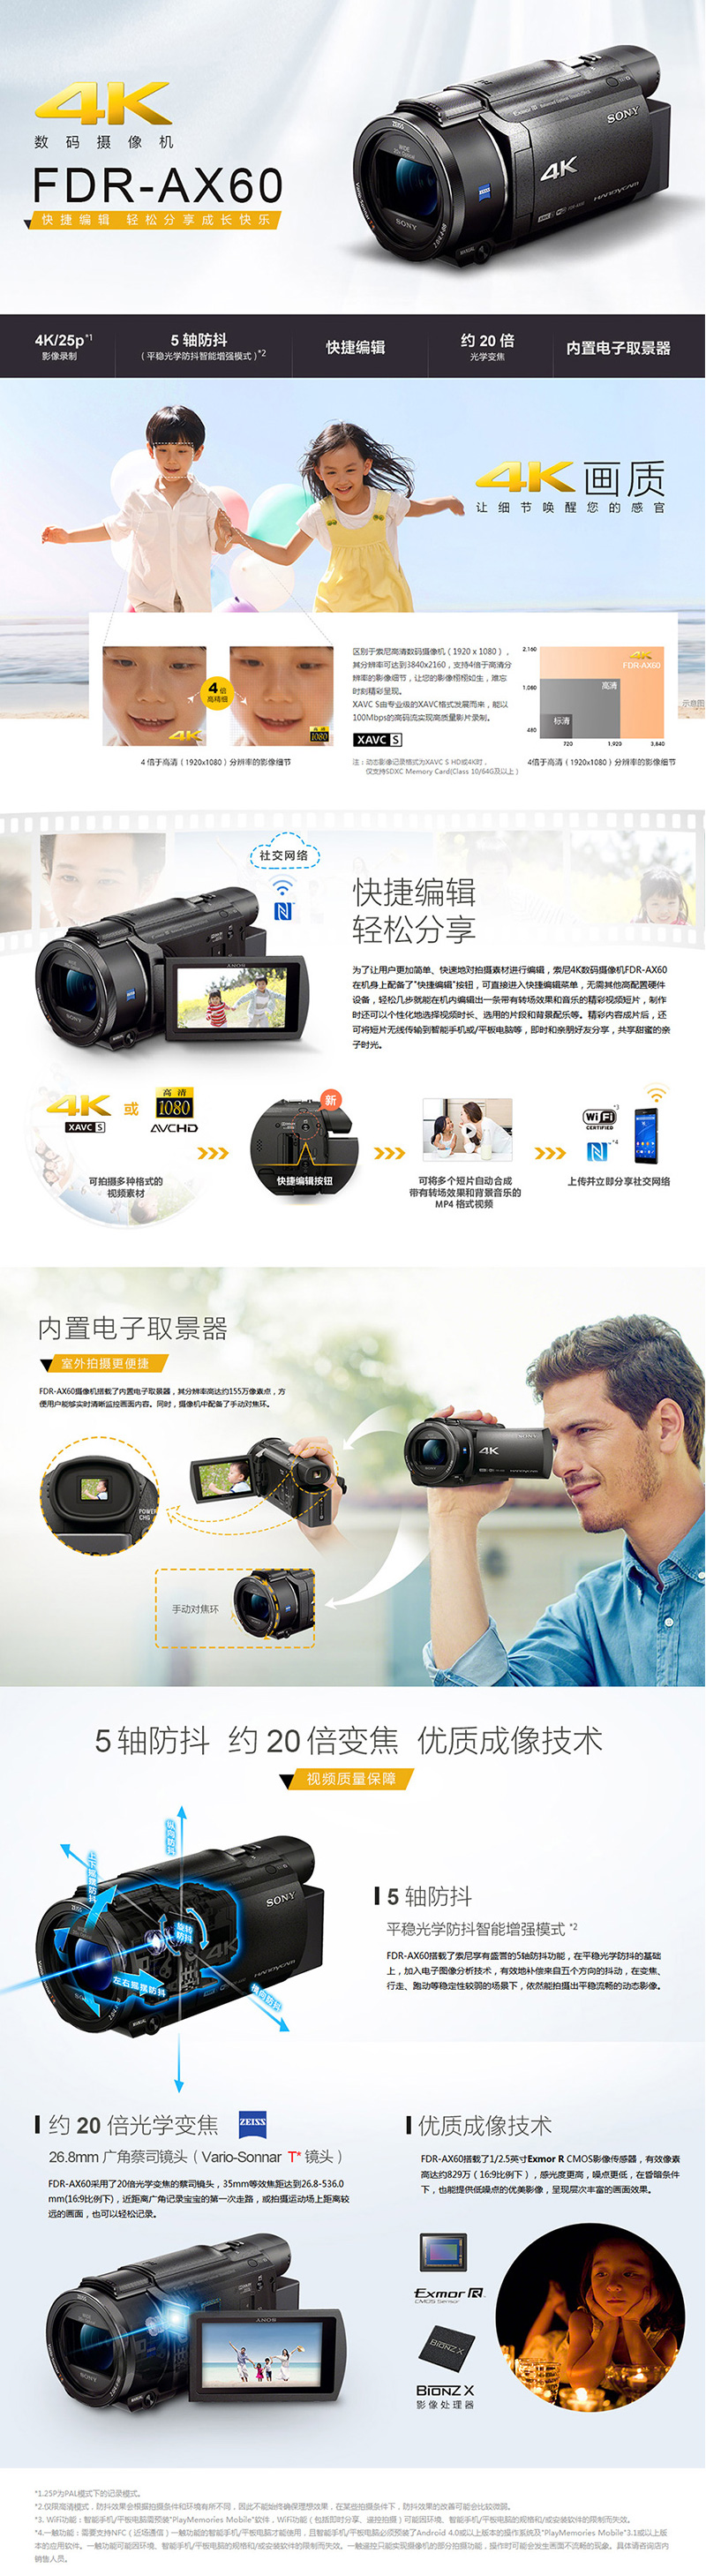 索尼FDR-AX60 高清数码摄像机